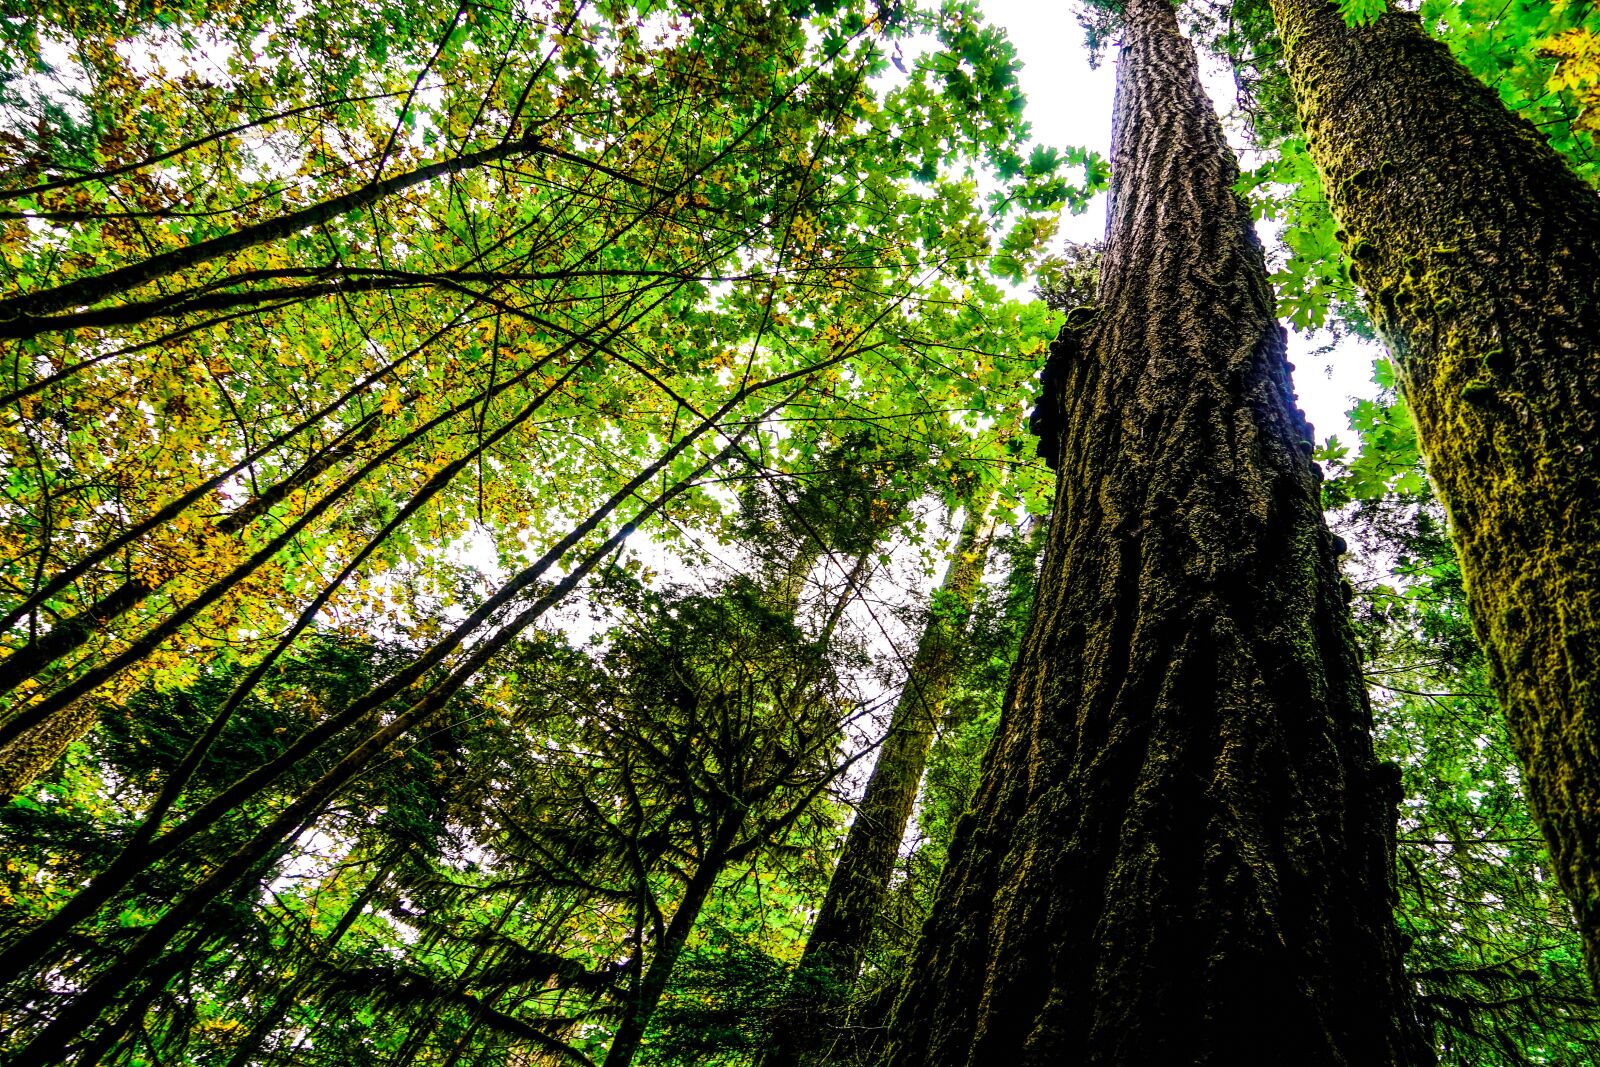 Sony a7 + Sony Vario Tessar T* FE 24-70mm F4 ZA OSS sample photo. Forest, trees, nature photography